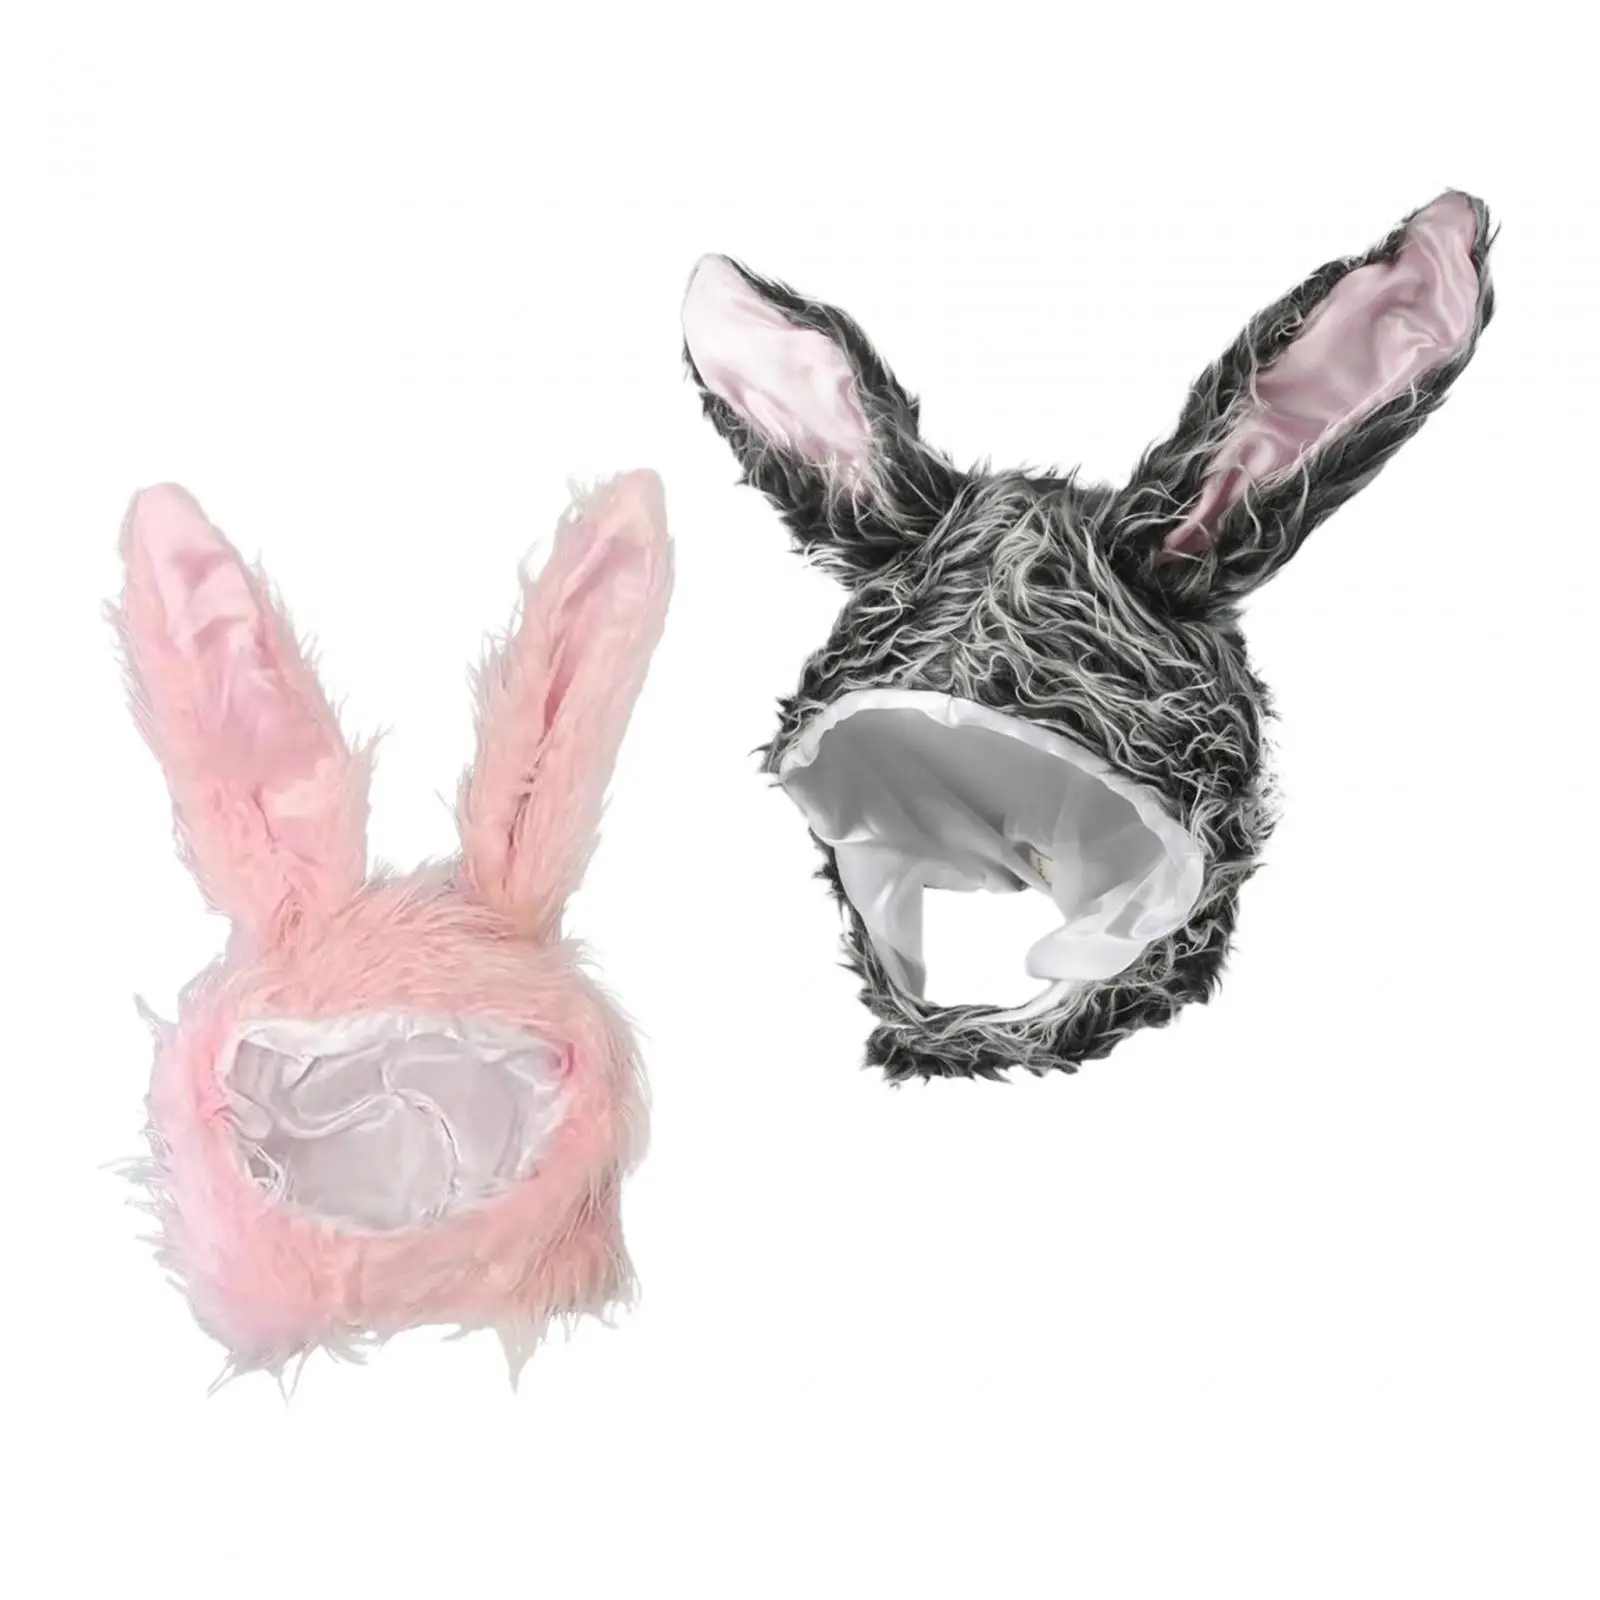 Rabbit Ears Hat Plush Costume Decoration Easter Warm Long Photo Props Headwear for Kids Halloween Fancy Dress Party Women Girls